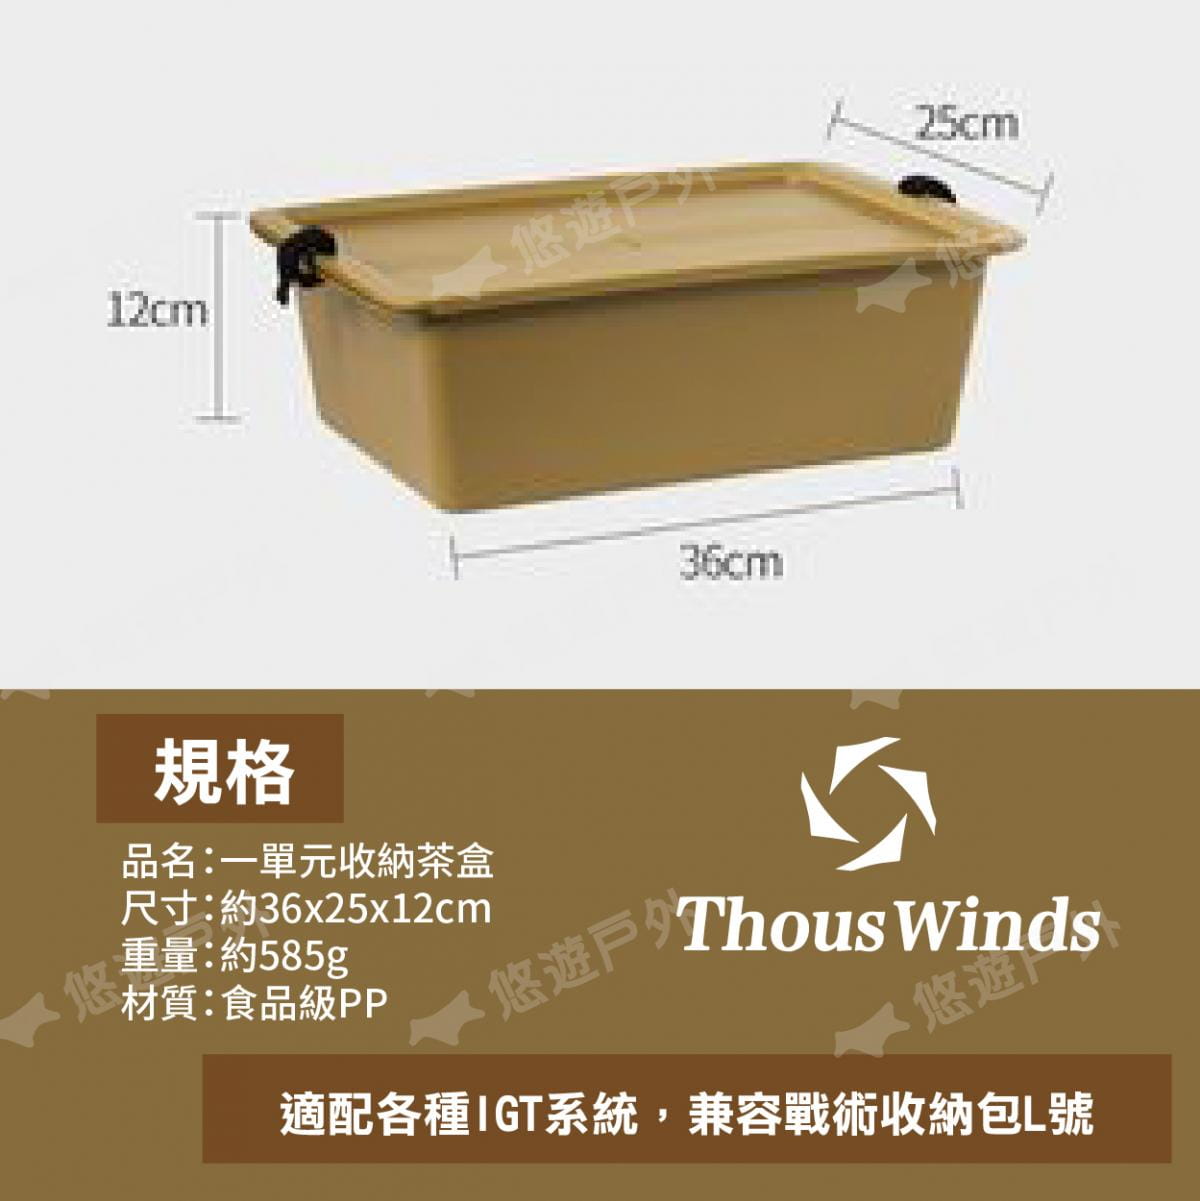 【Thous Winds】 一單元收納茶盒 三色 TW-IGT09B/G/K 悠遊戶外 8